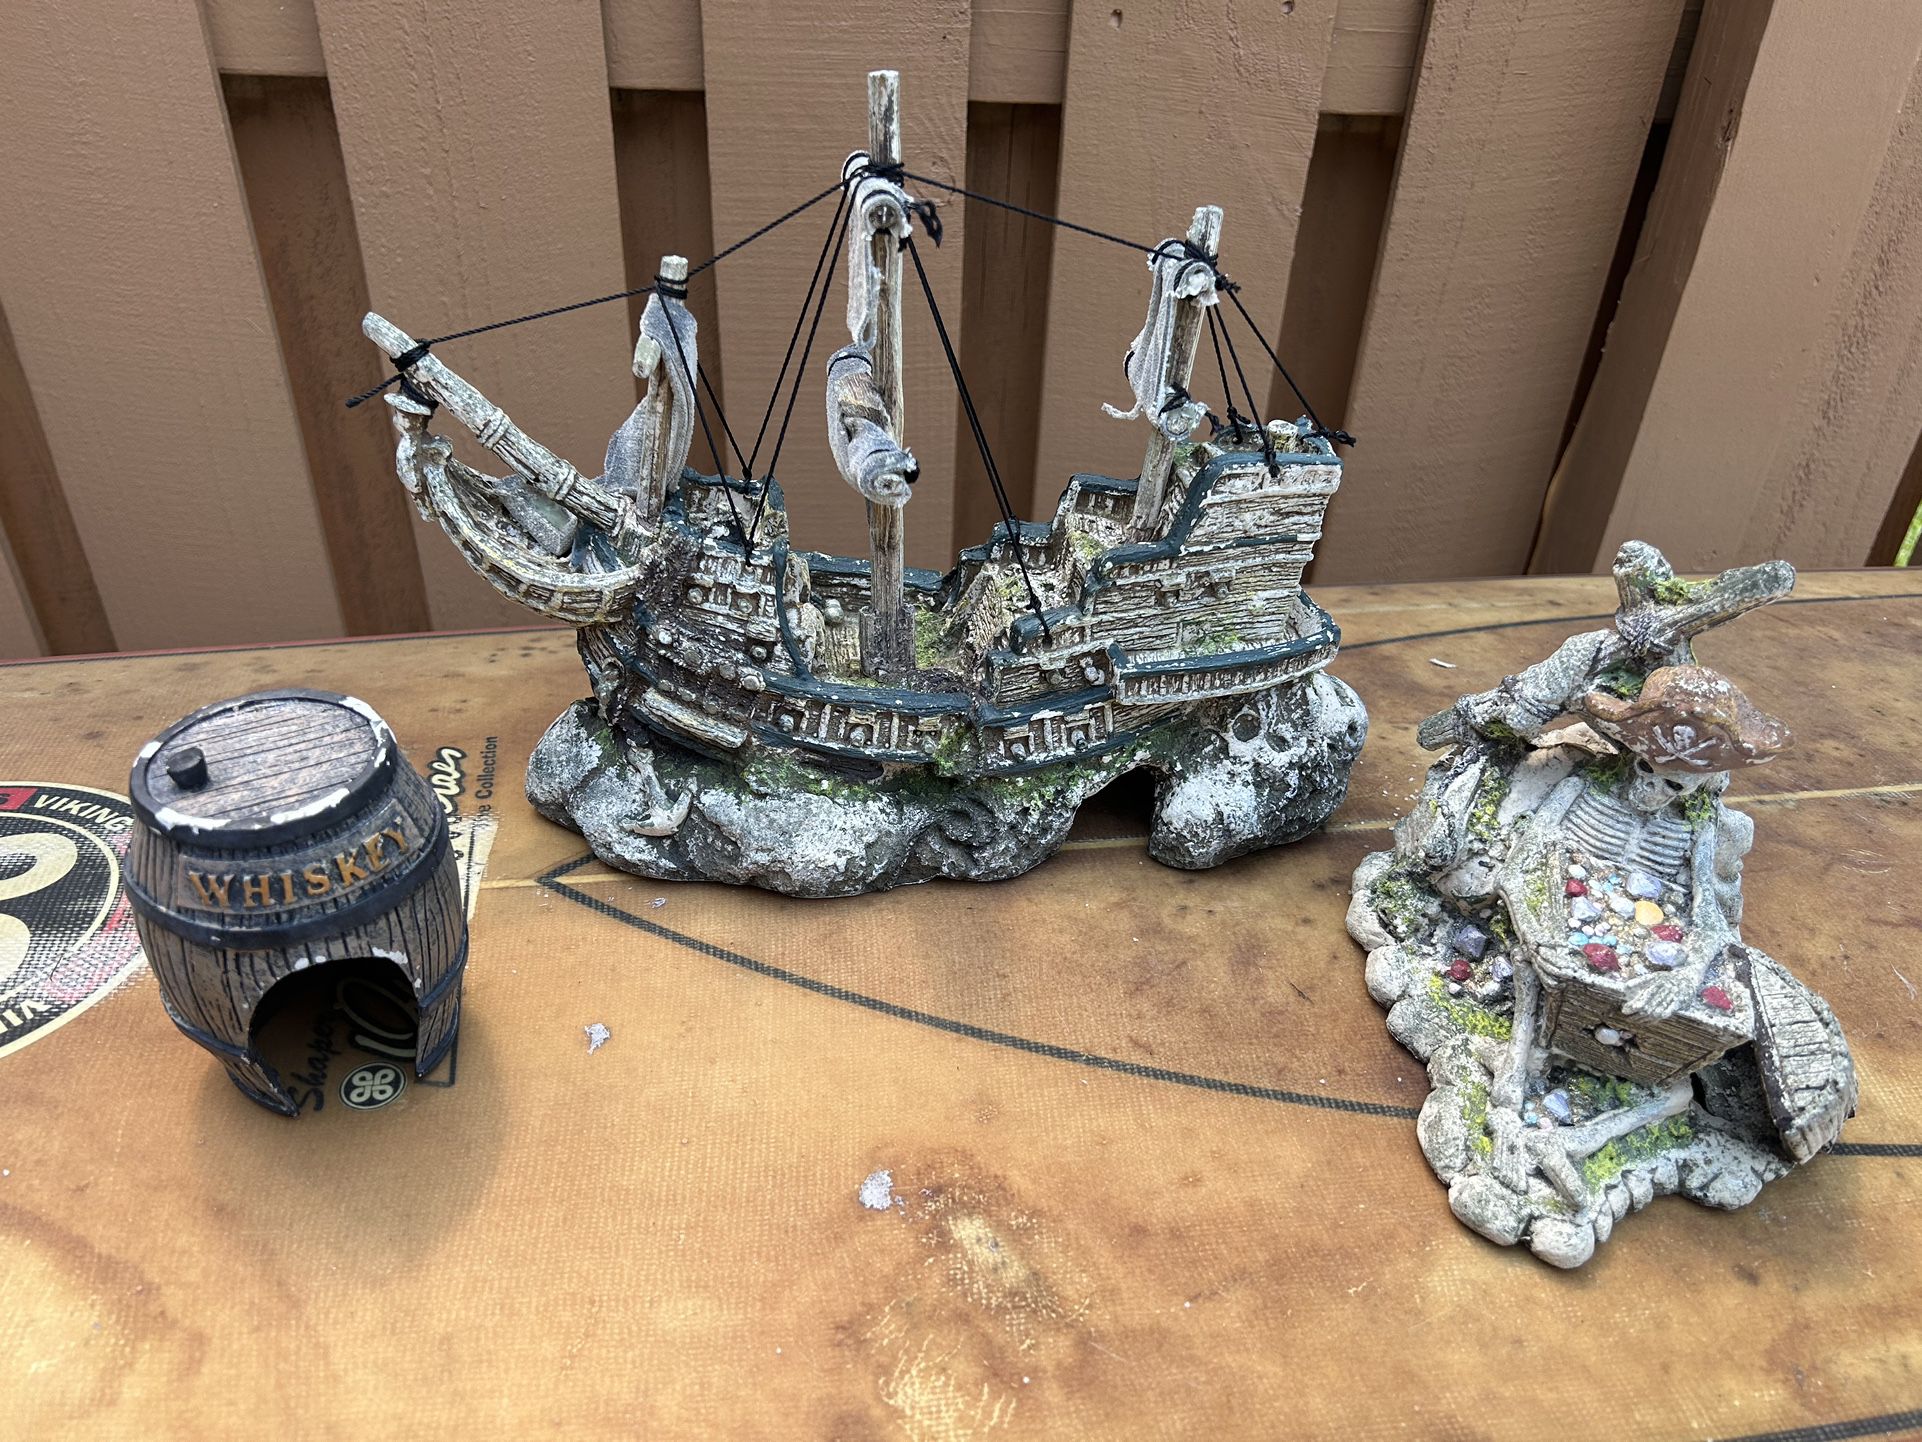 Pirate 🏴‍☠️ Aquarium Ornament Fish Tank Decoration